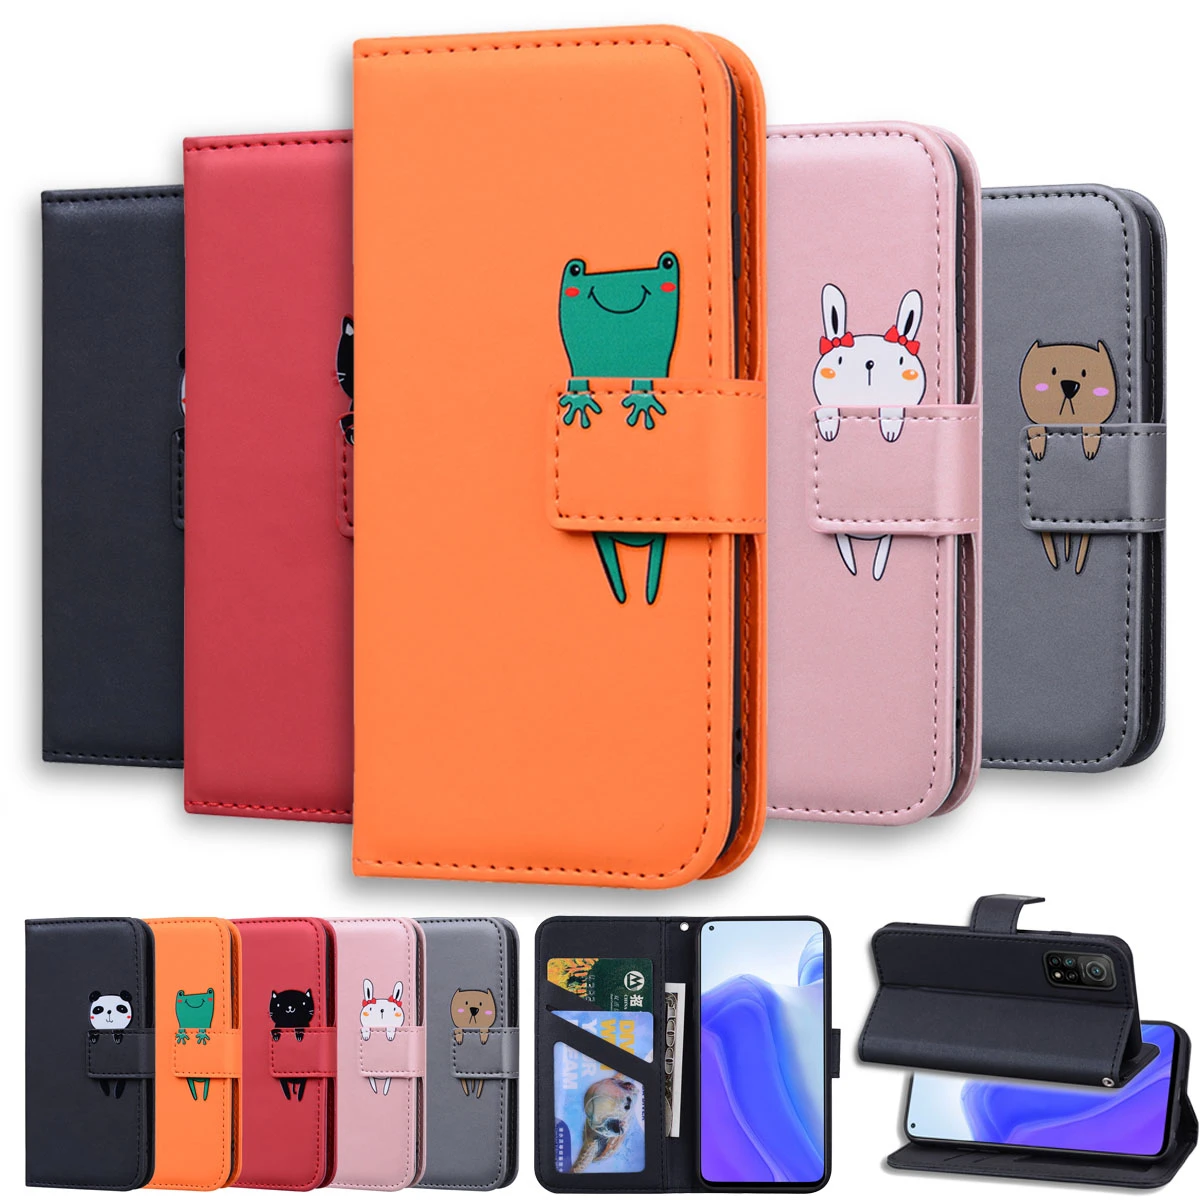 Lovely Animal Flip Leather Phone Case For Xiaomi POCO X3 NFC Redmi Note 9 9S 9A 9C 7 8 8T 7A 8A Mi 10 9T Pro Card Holder Cover